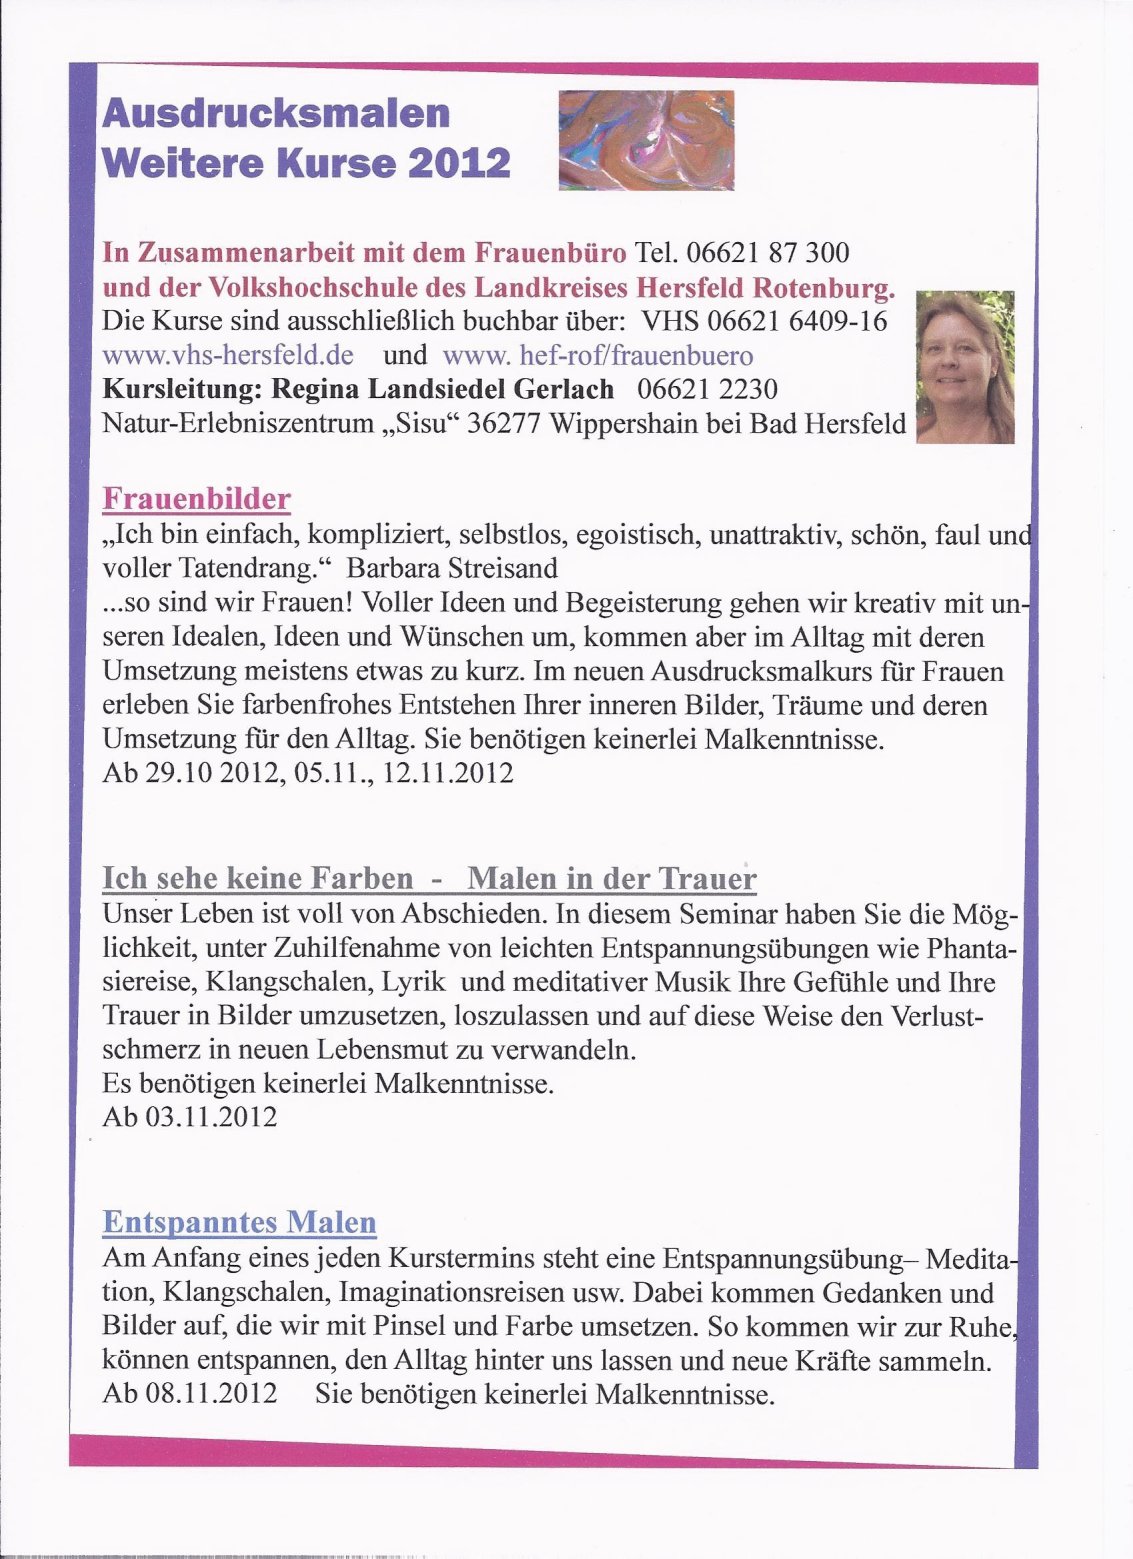 Kursangebot - Ausdrucksmalen Herbst 2012 VHS und Frauenbüro Bad Hersfeld-Rotenburg